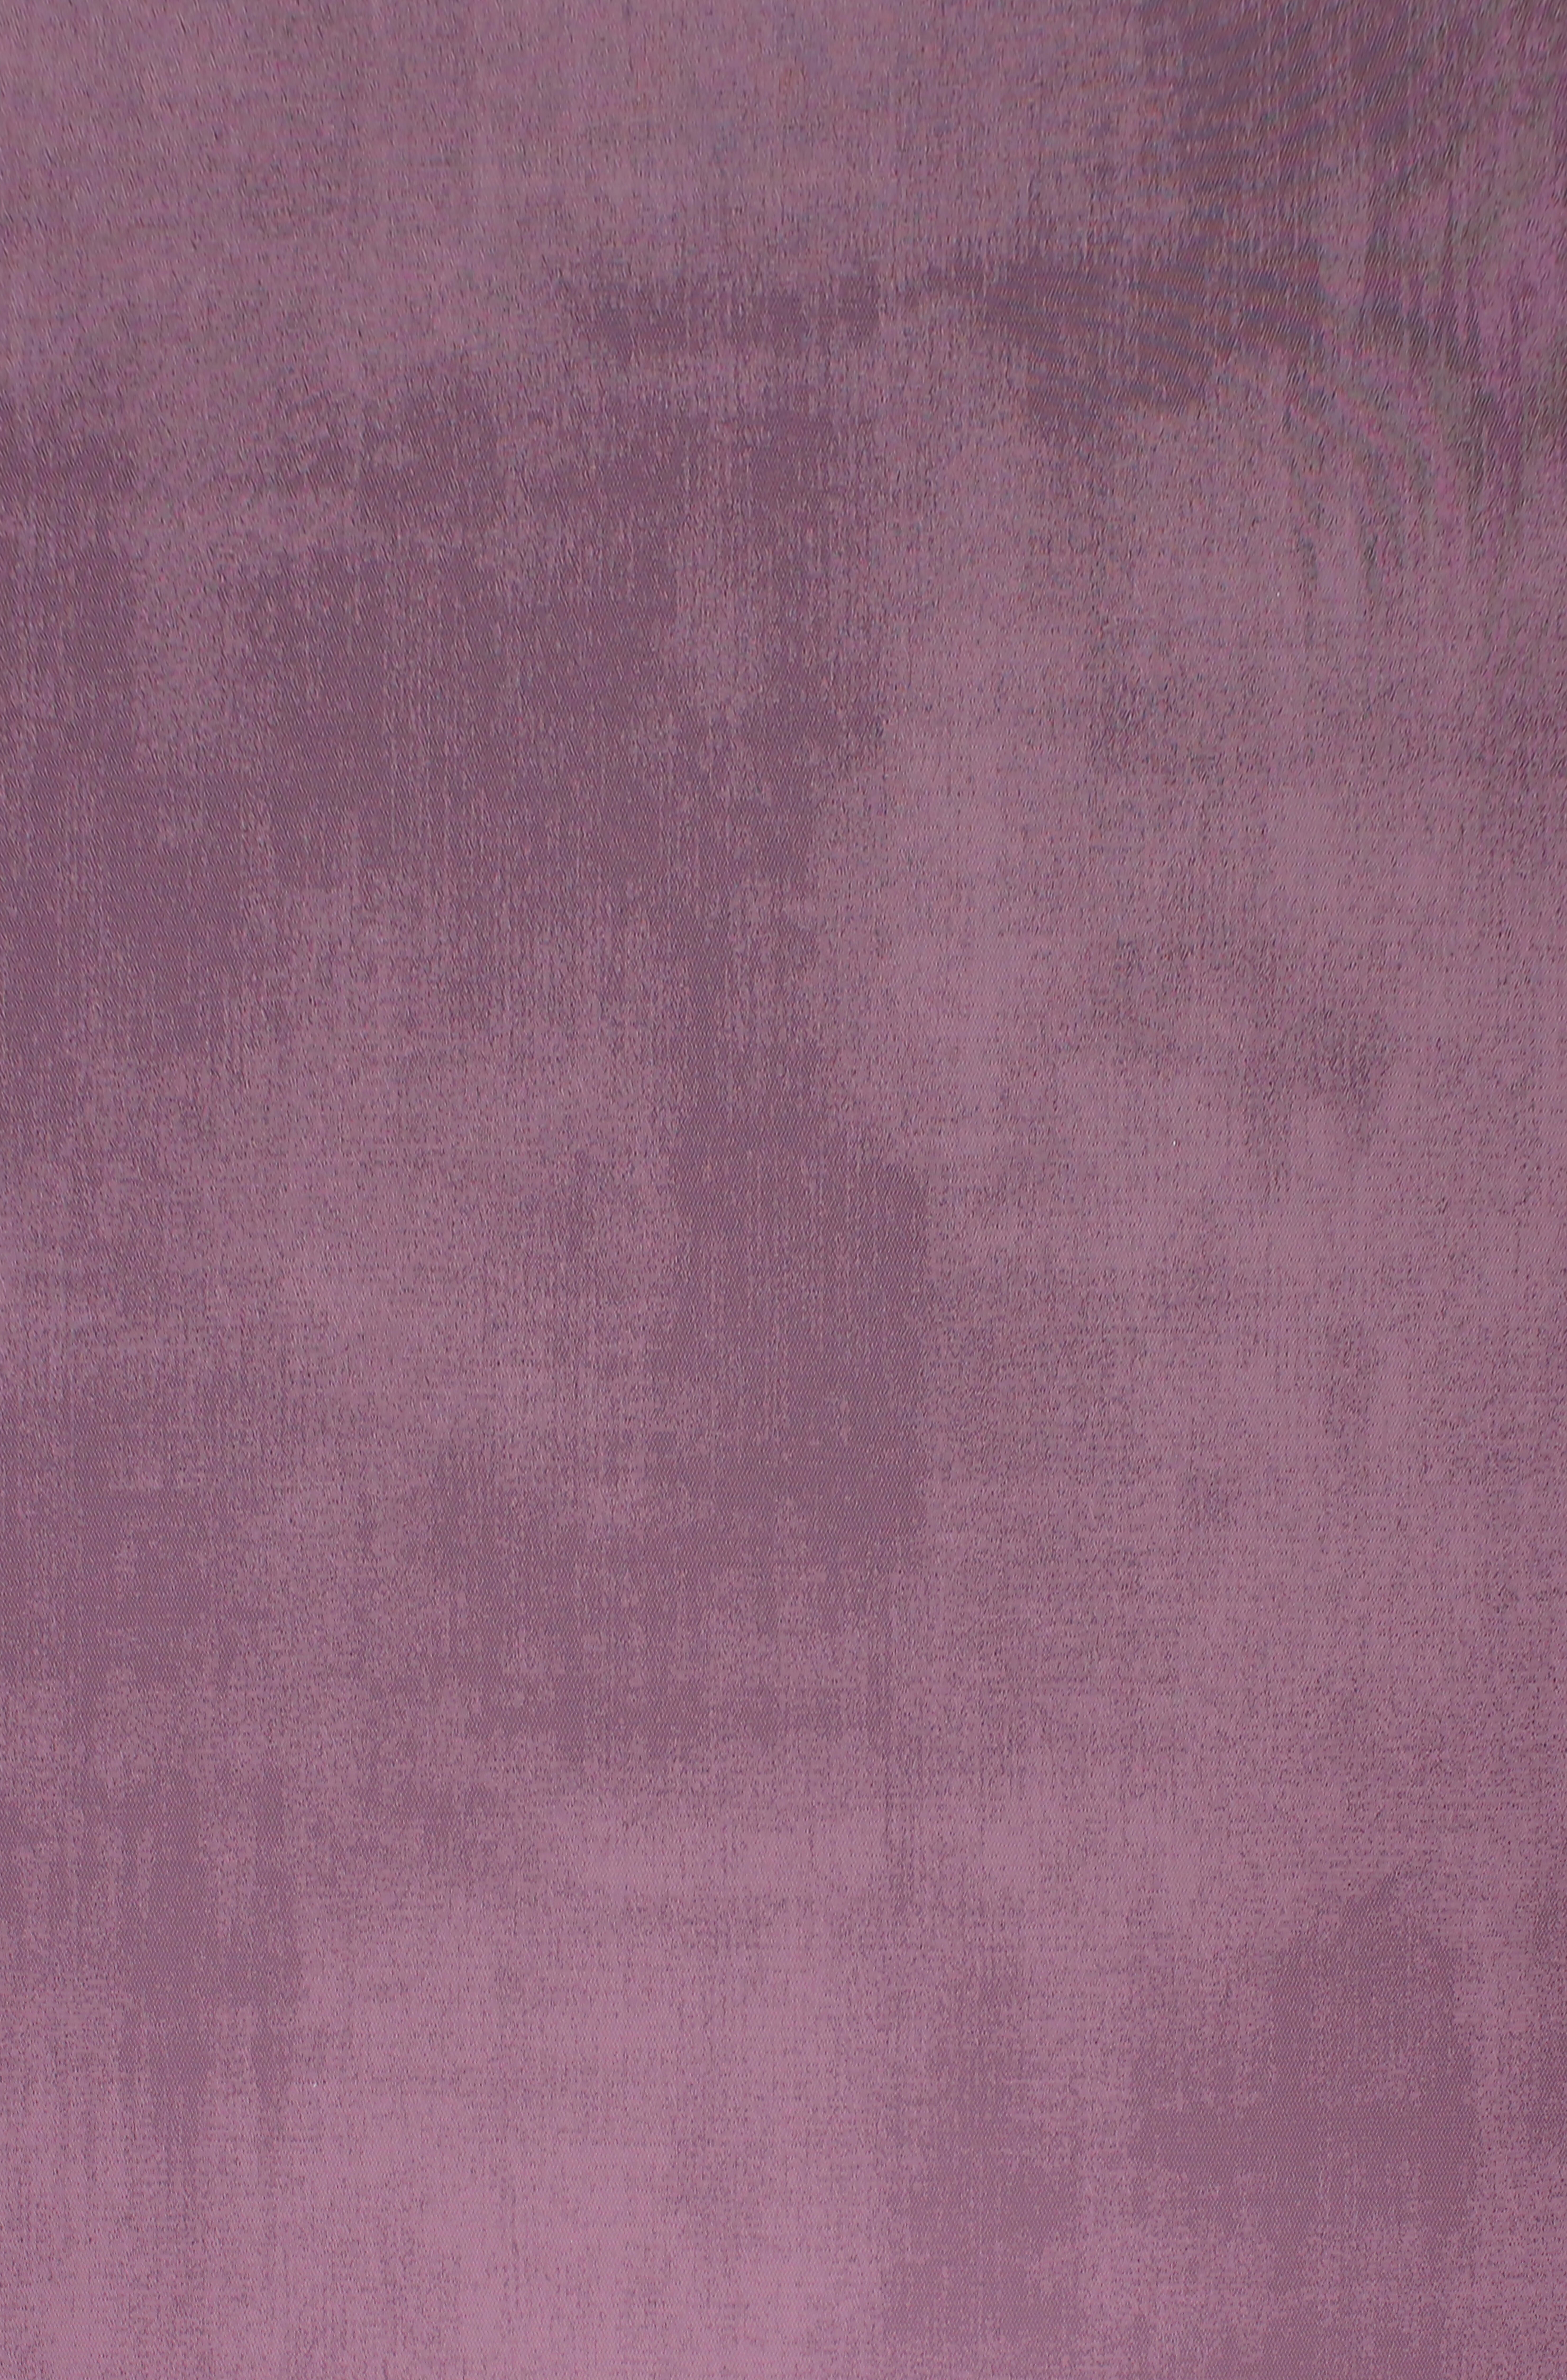 Alfombra exterior/interior pvc teplon shadow rosa 140x200cm de la marca TEMYPLAST